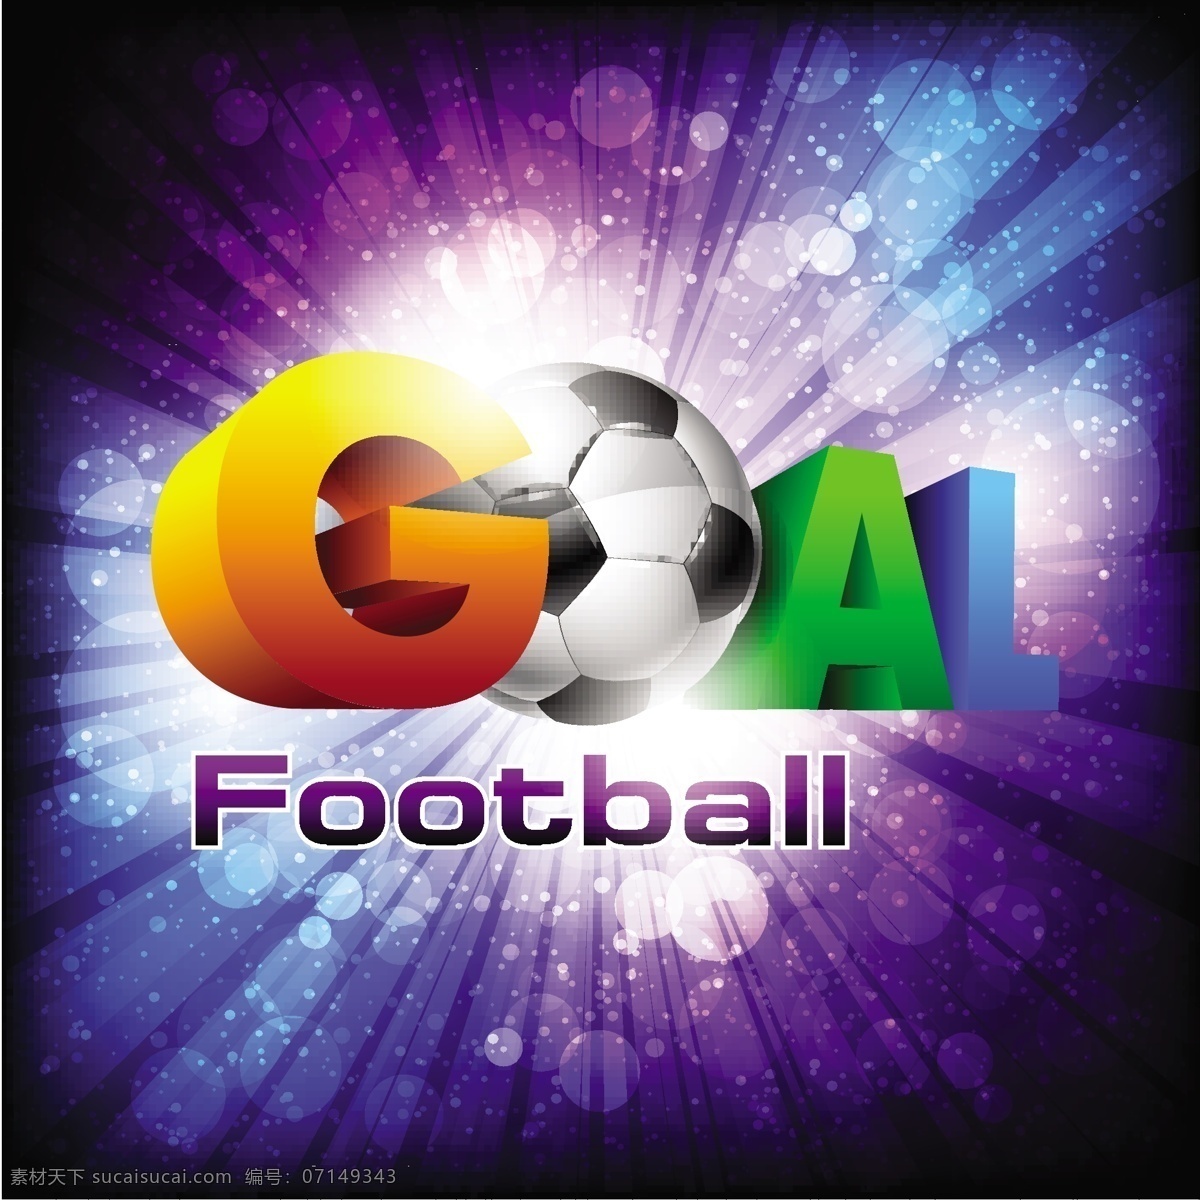 炫彩 世界杯 足球 海报 模板下载 字母 体育运动 生活百科 矢量素材 蓝色